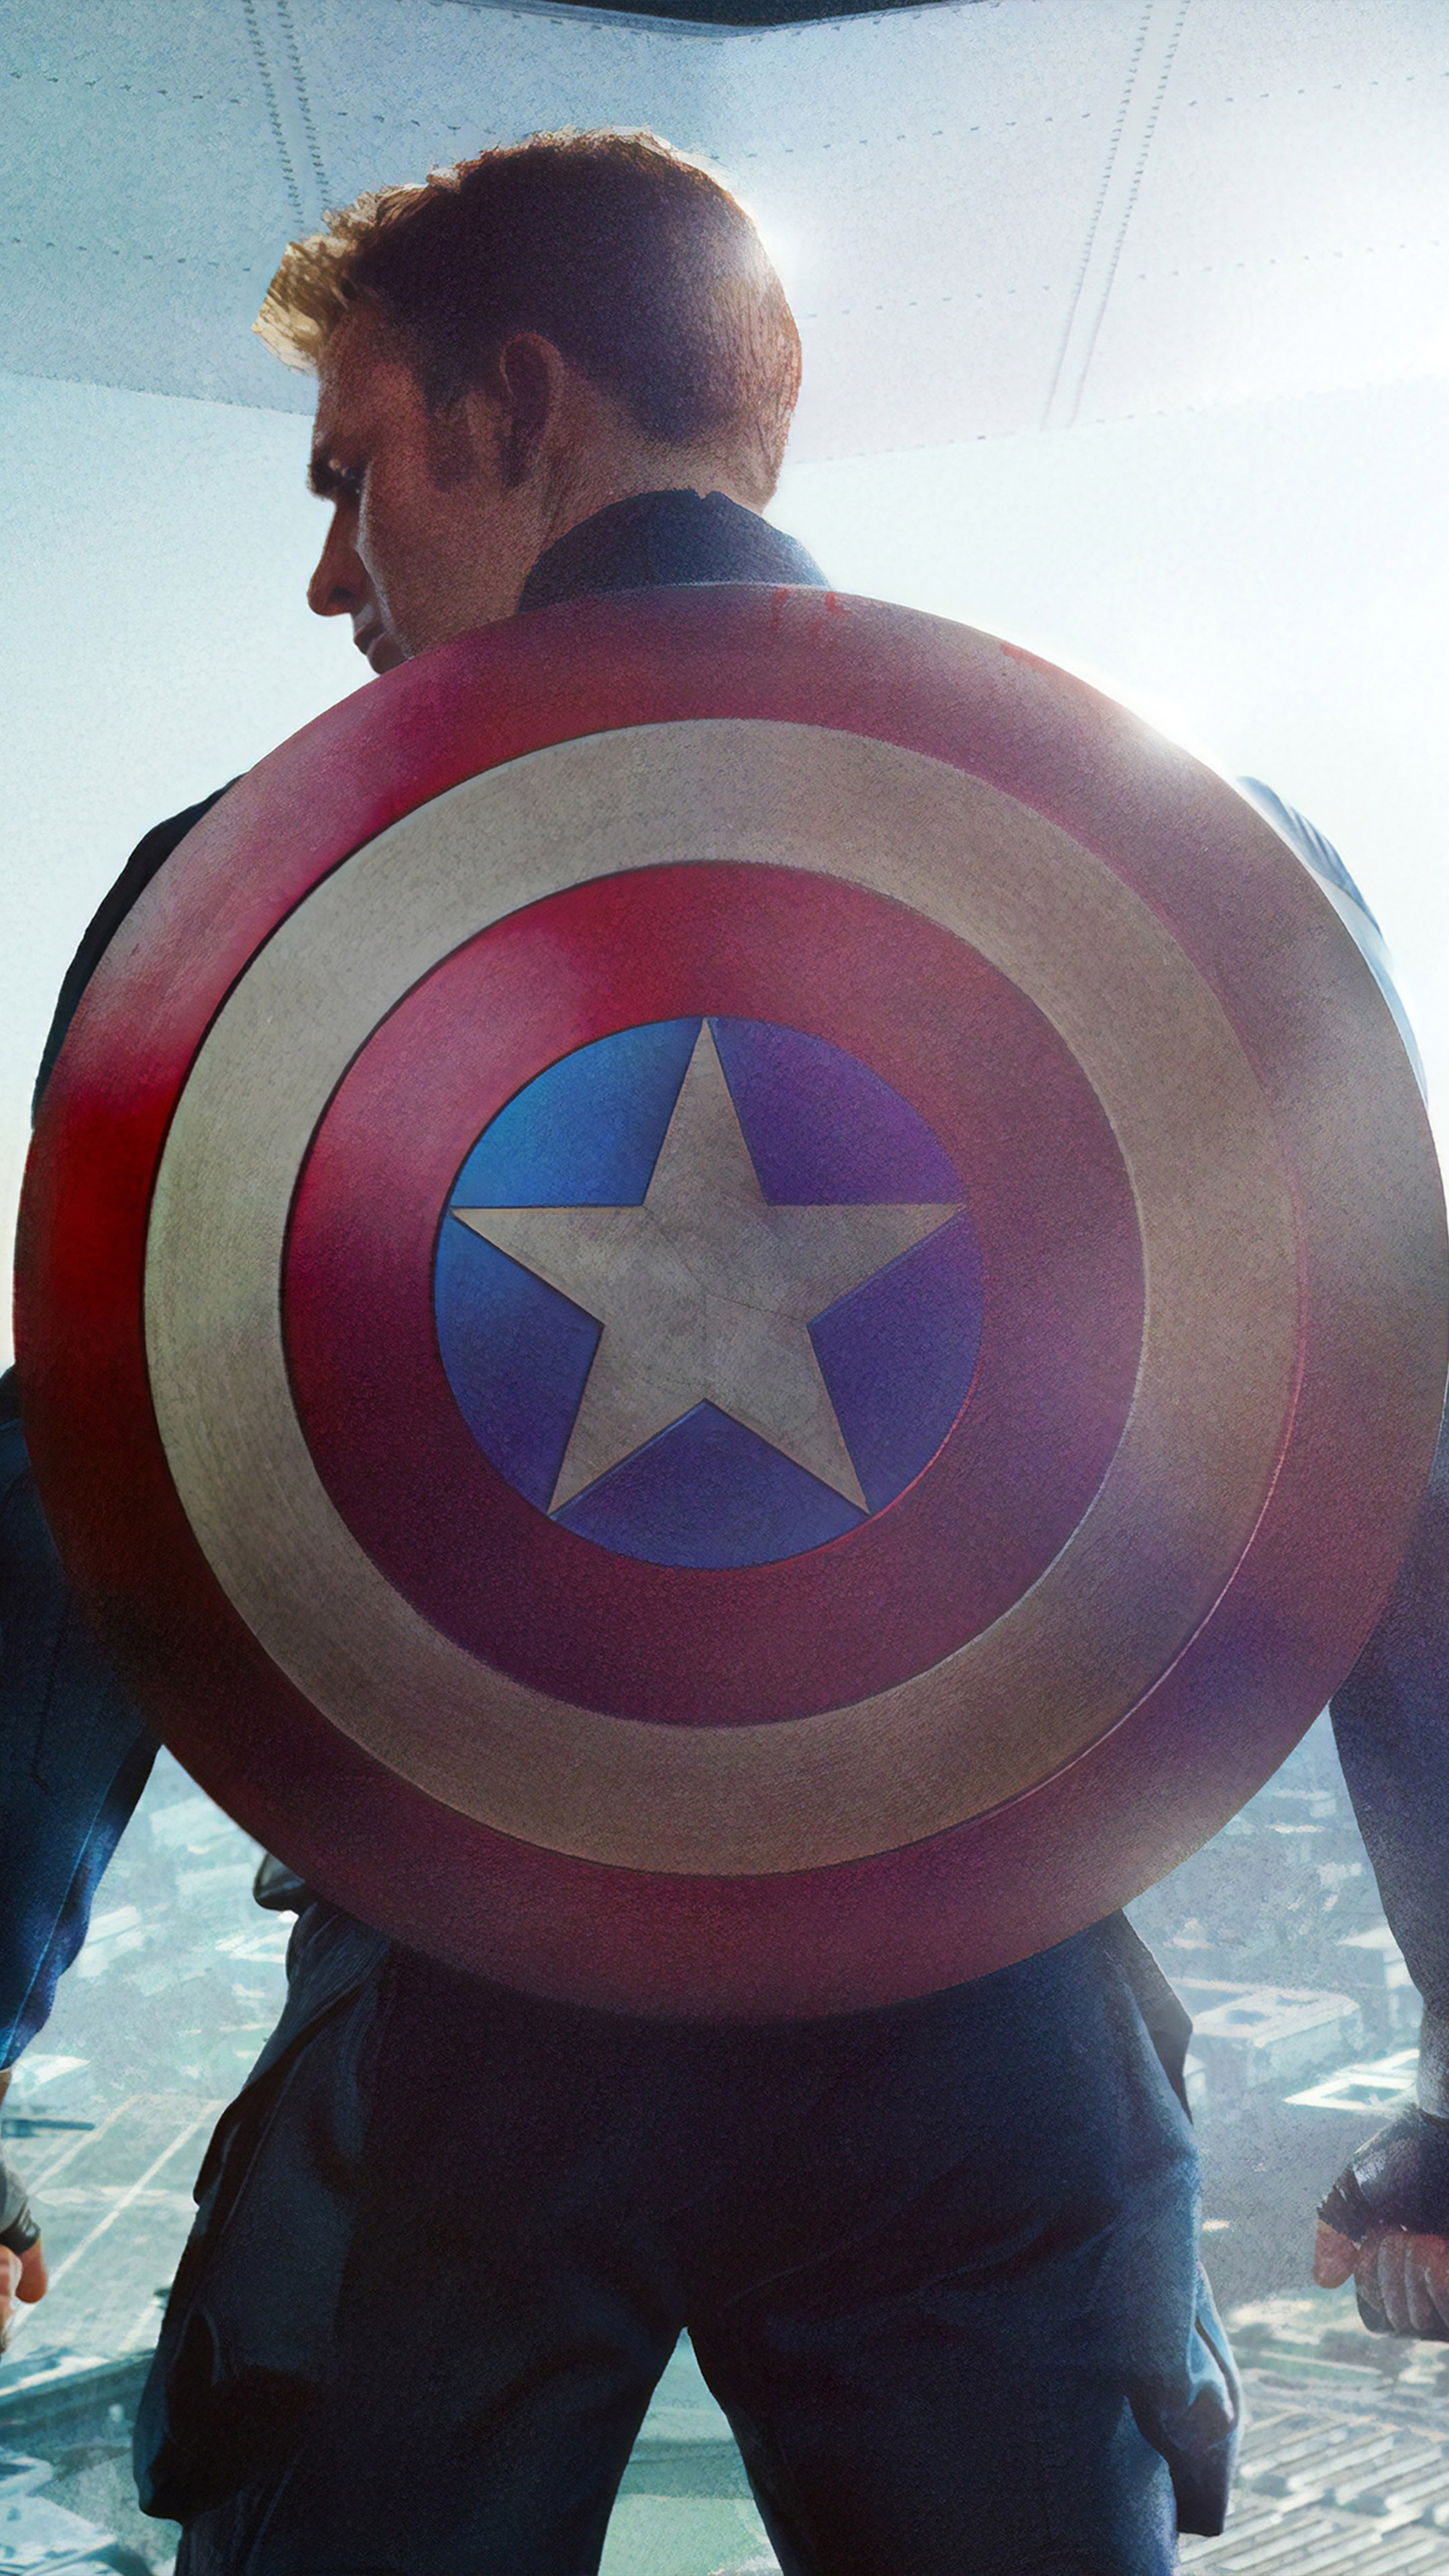 captain america wallpaper for mobile,captain america,superhero,fictional character,avengers,sleeve